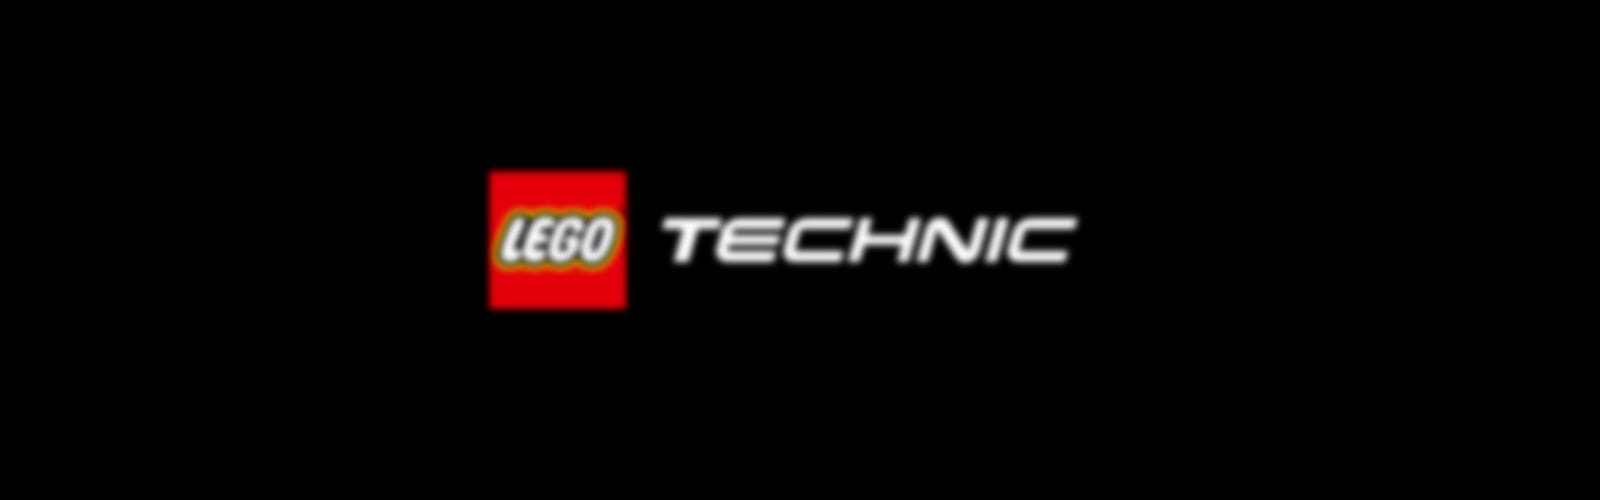 lego robotics logo